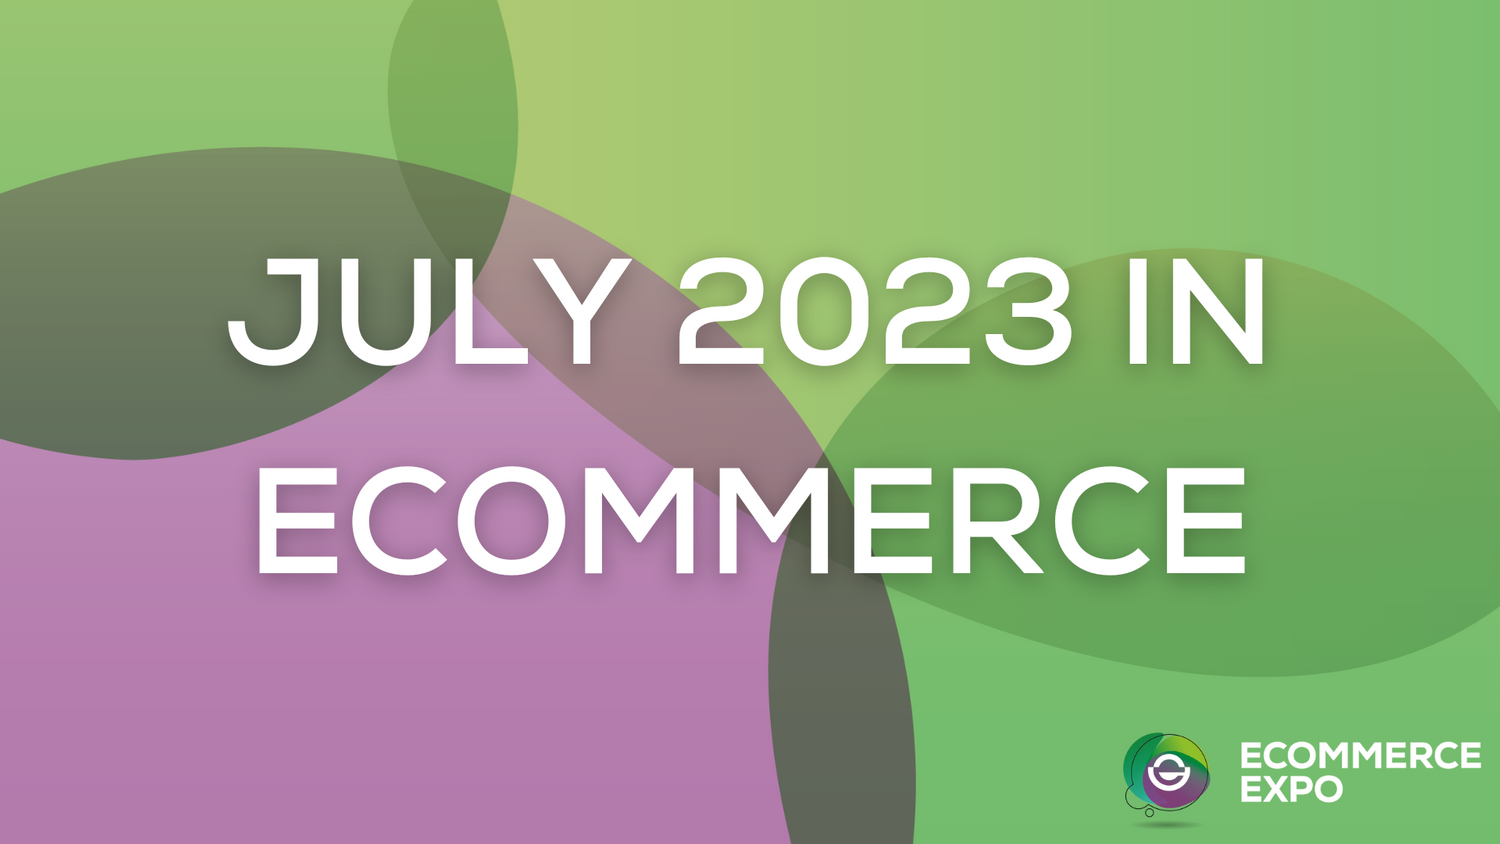 June 2023 in eCommerce